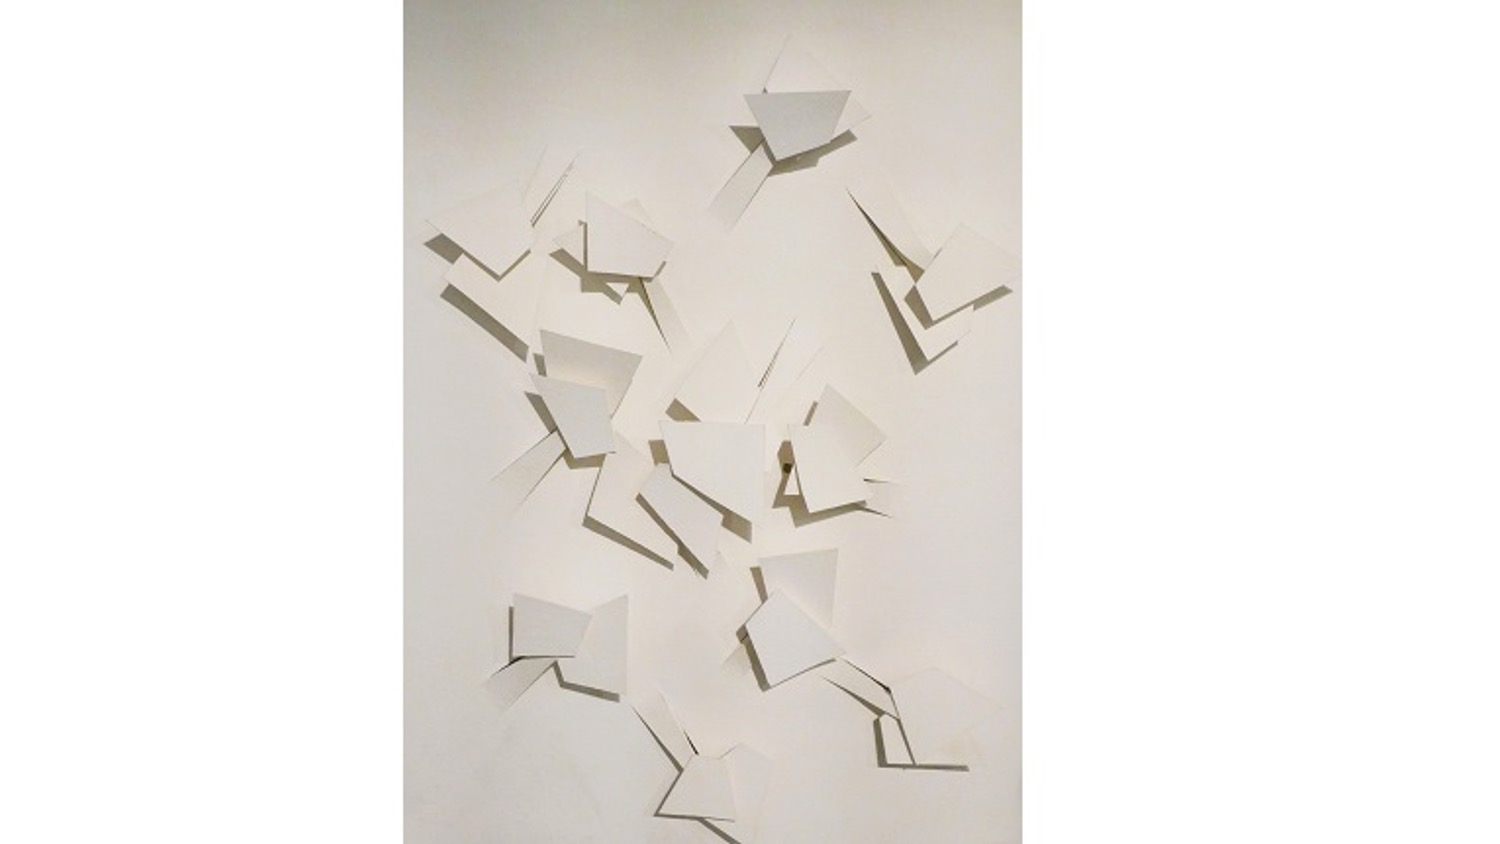 Arthur Luiz Piza. Artista brasileño, 1928-2017. "S/T", 1998. Obra tridimensional realizada en papel hecho a mano tipo cartulina, recortada. 75 x 57 cm.